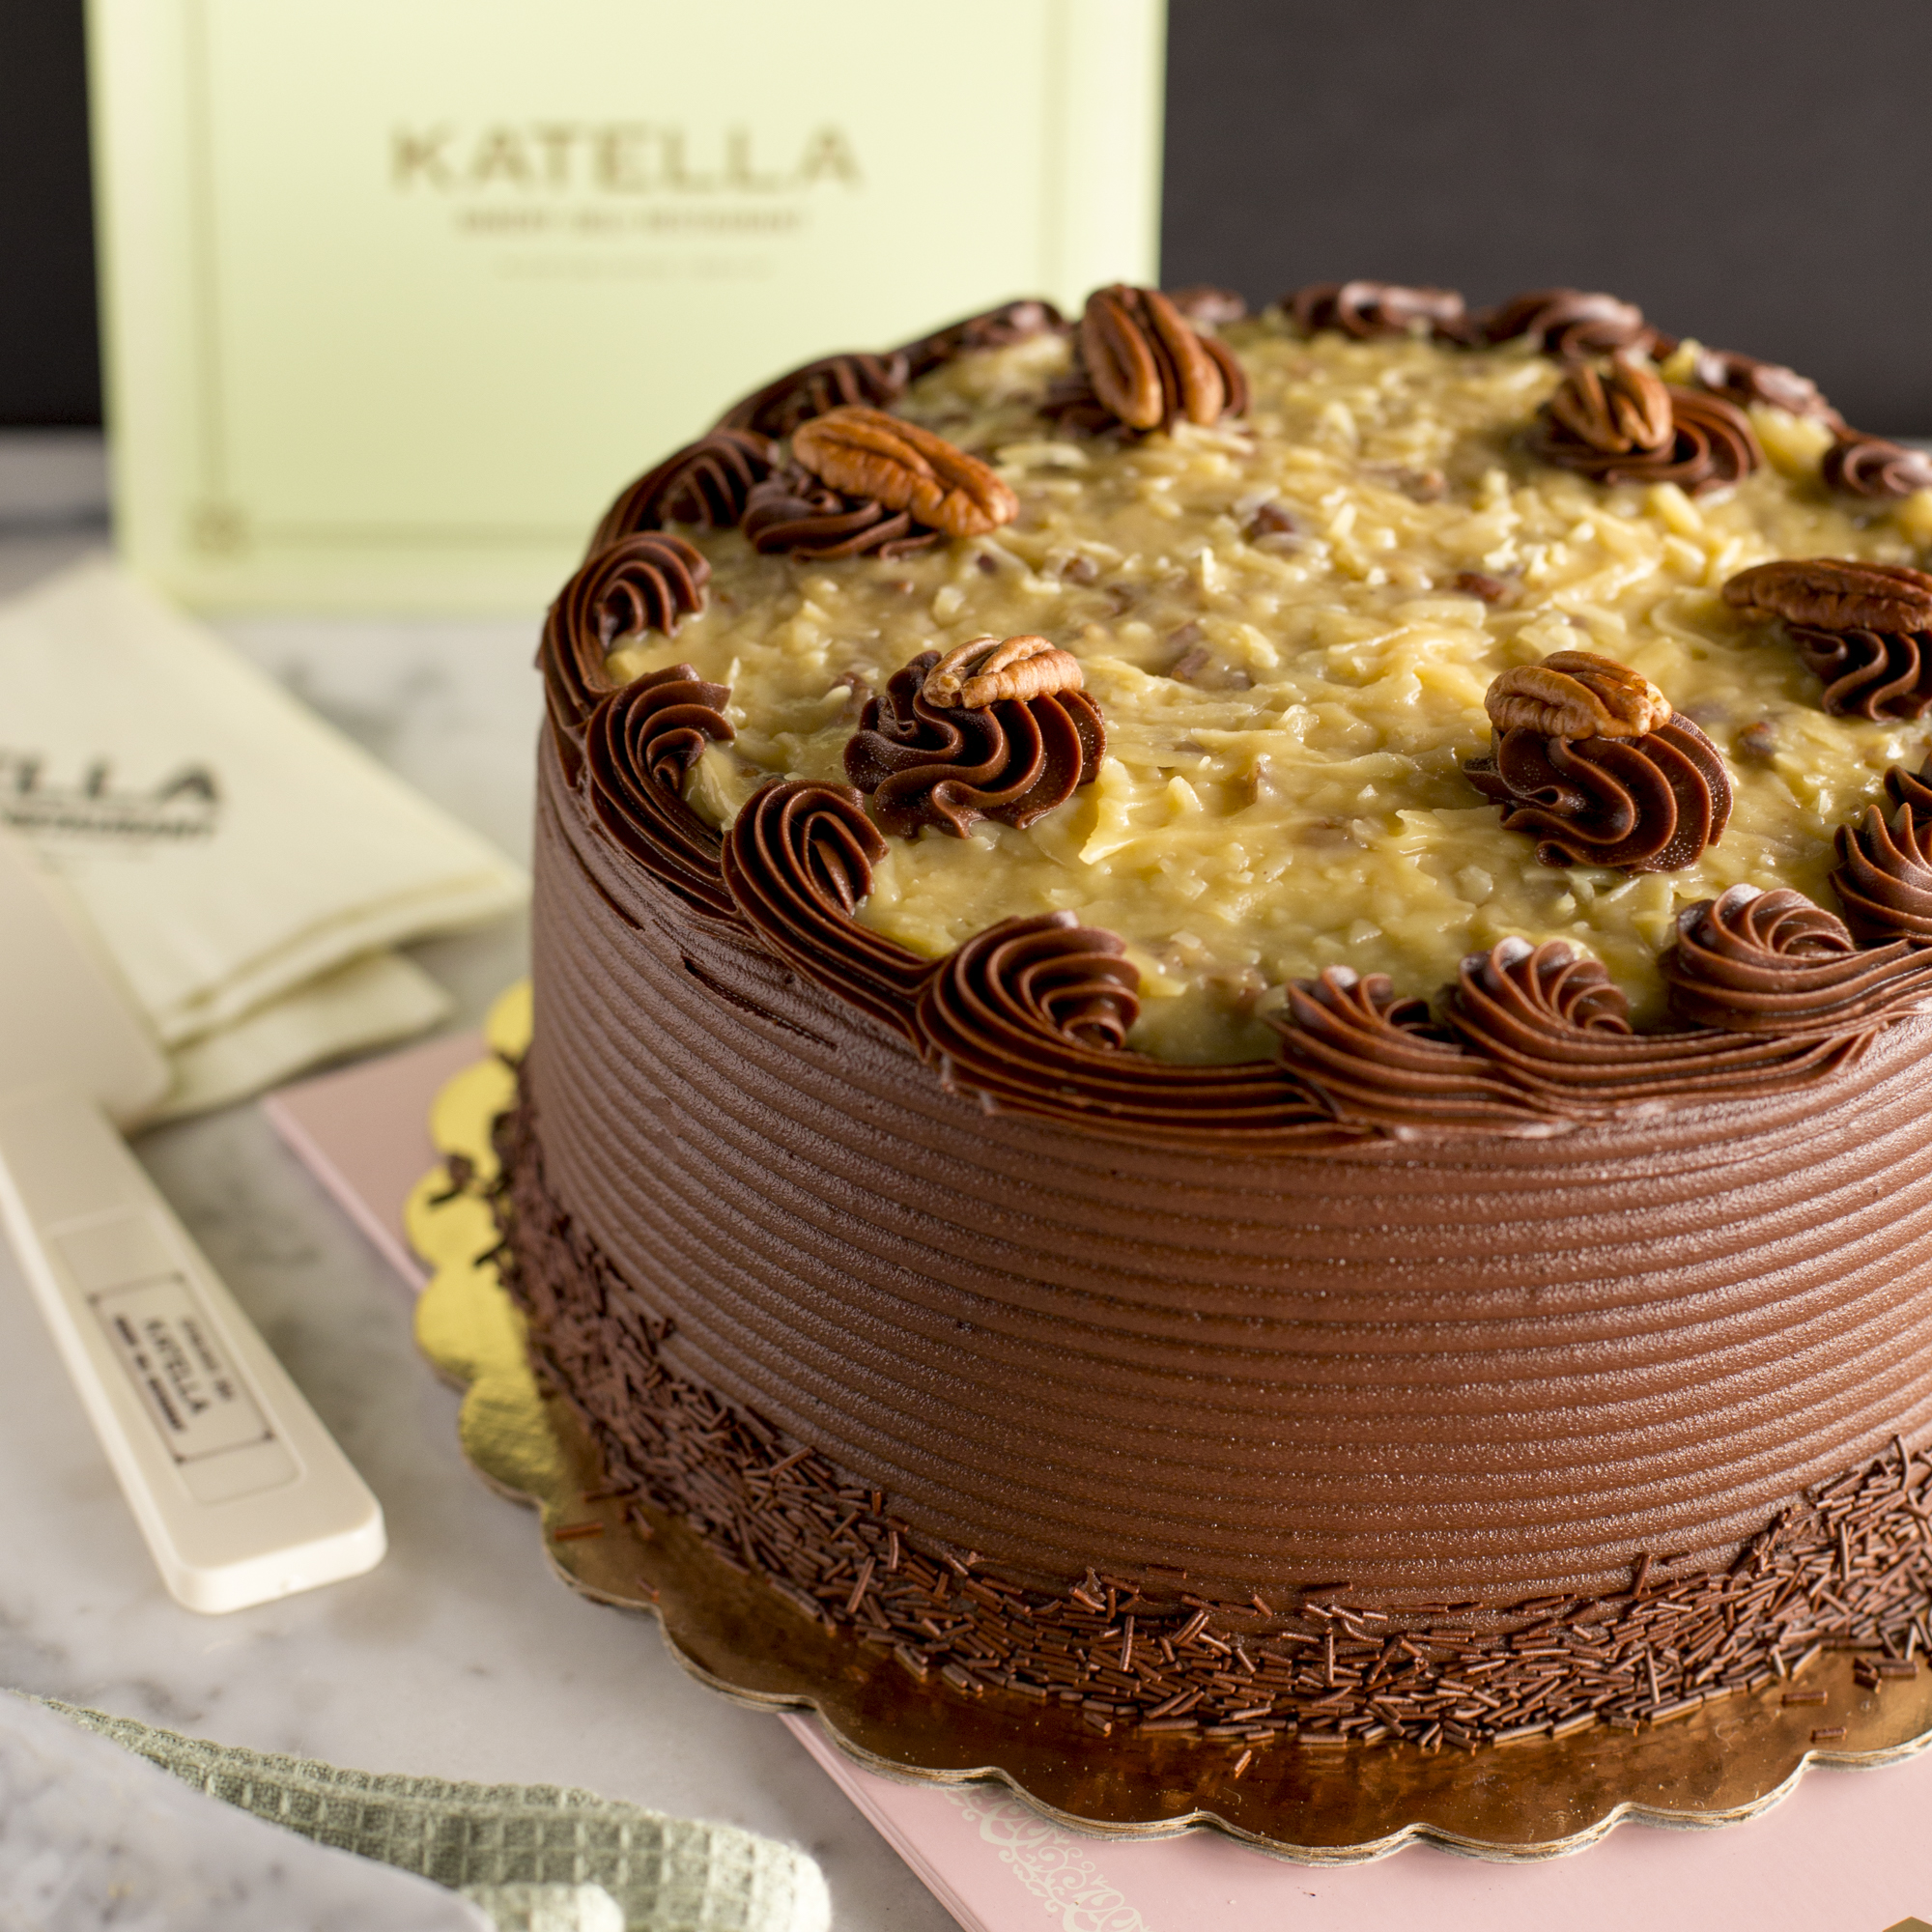 Katella Bakery German chocolate cake